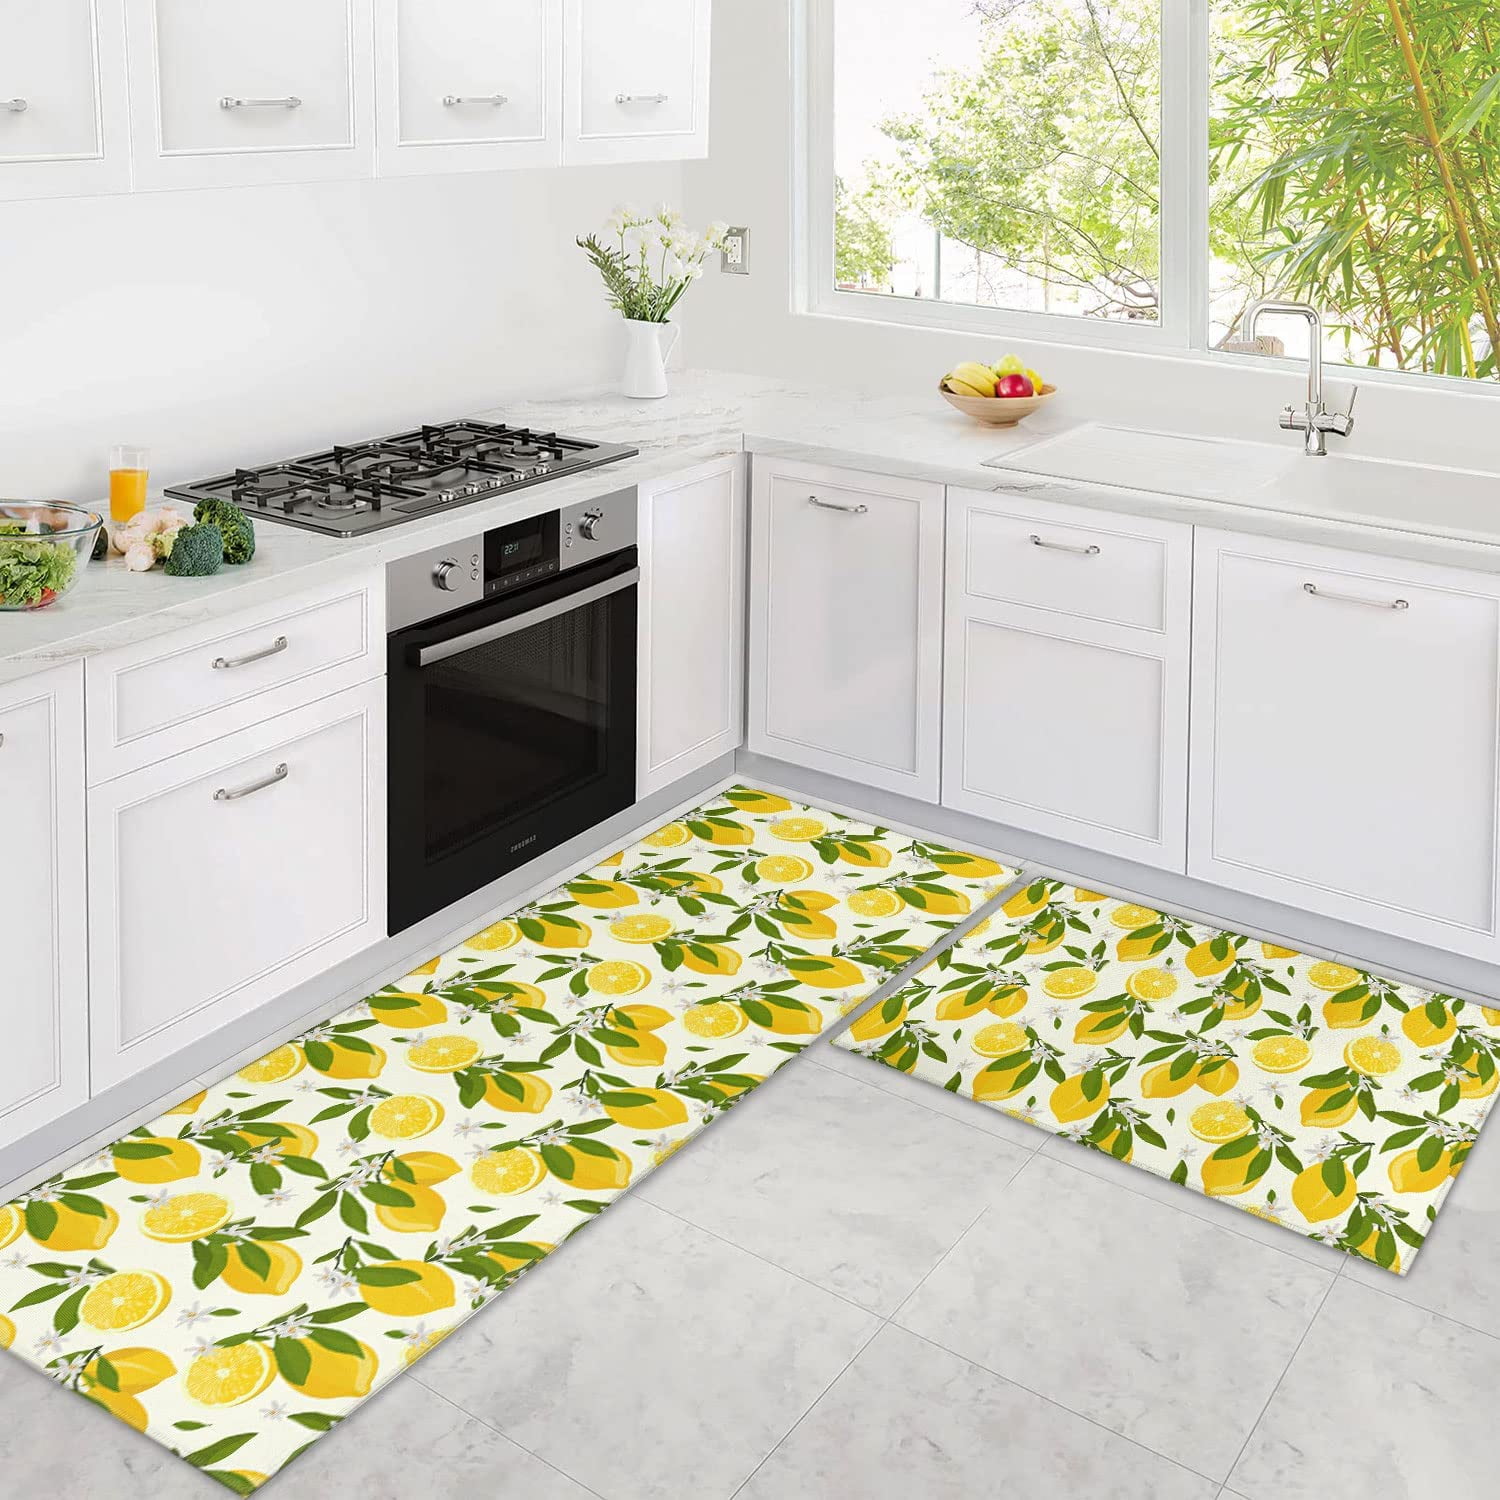 Mloabuc Yellow Lemon Decorative Kitchen Mats Set of 2, Anti